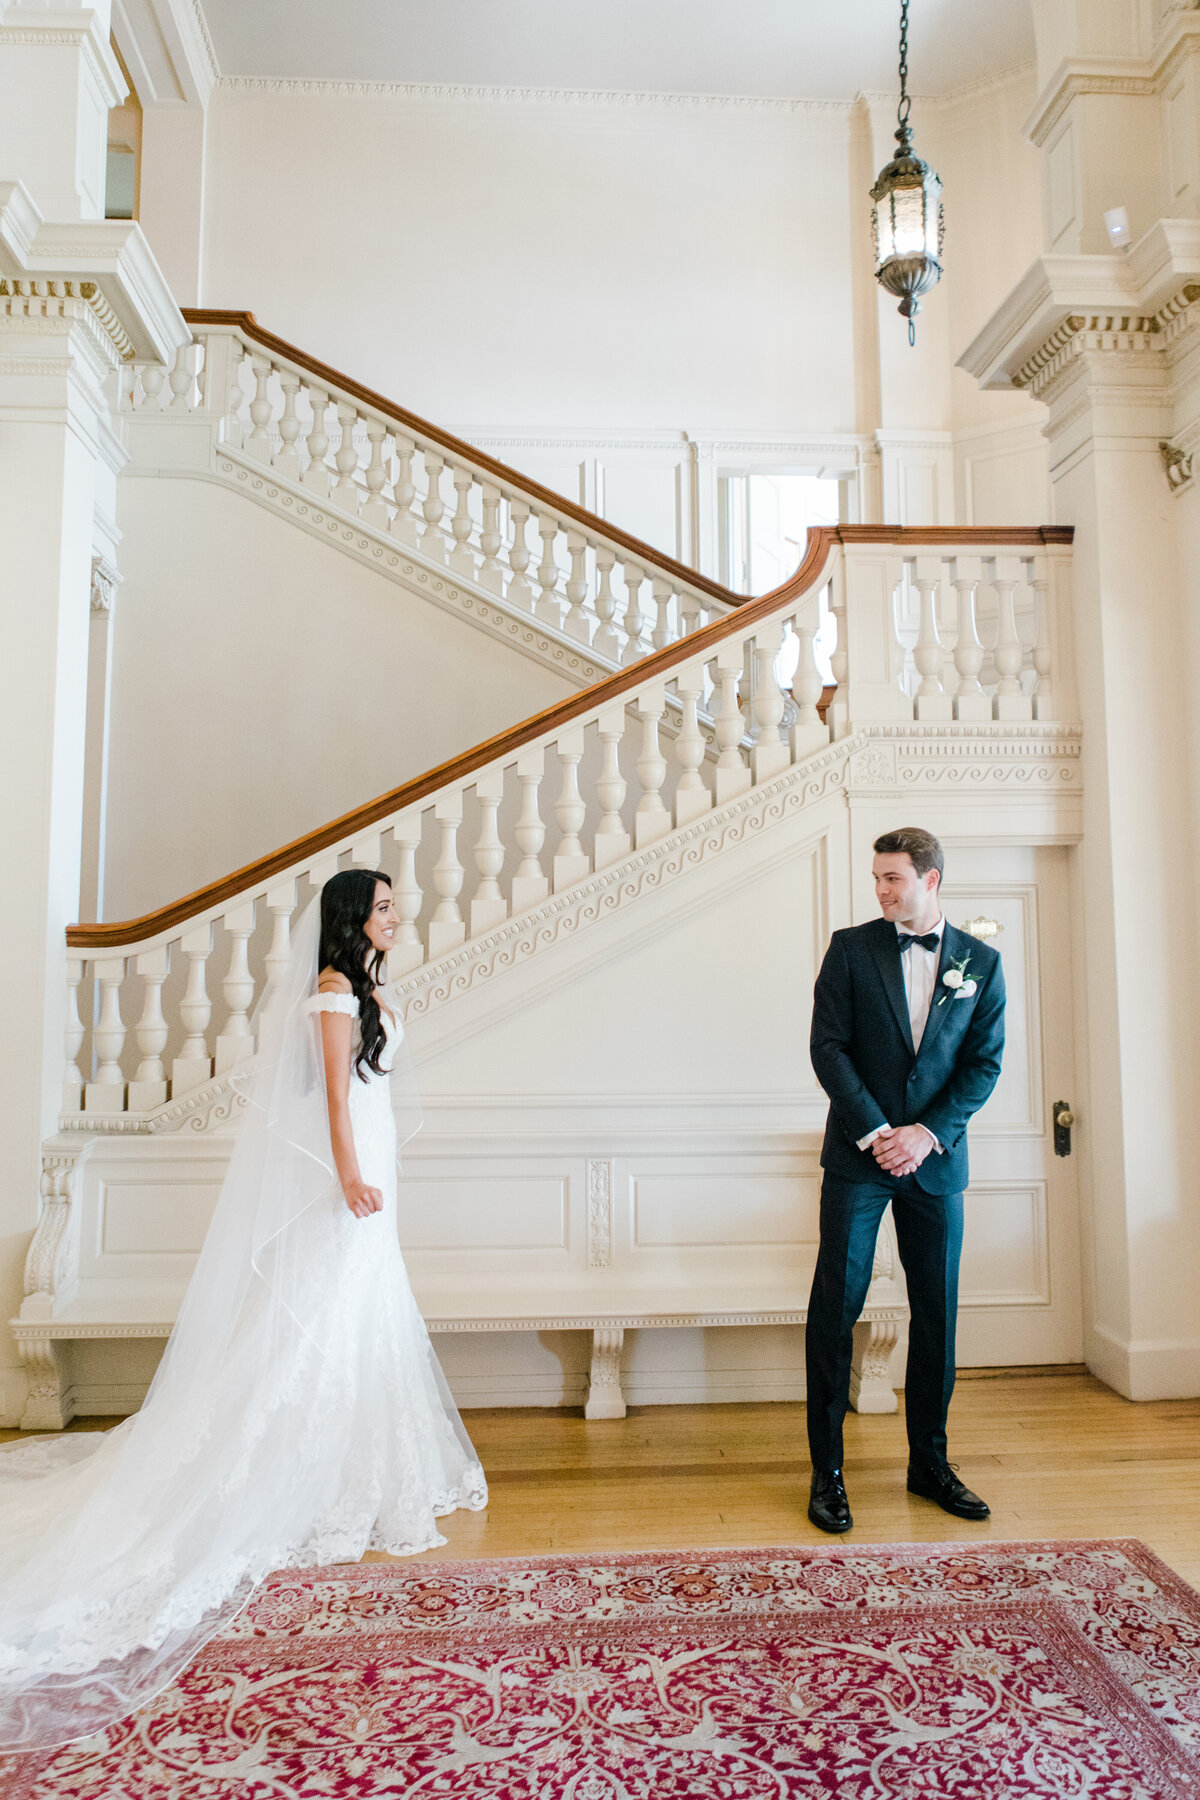 Mariya_Brad_Cairnwood_Estate_Abington_Arts_Center_Wedding_Washington_DC_VA_MD_Wedding_Photographer_AngelikaJohnsPhotography-1743